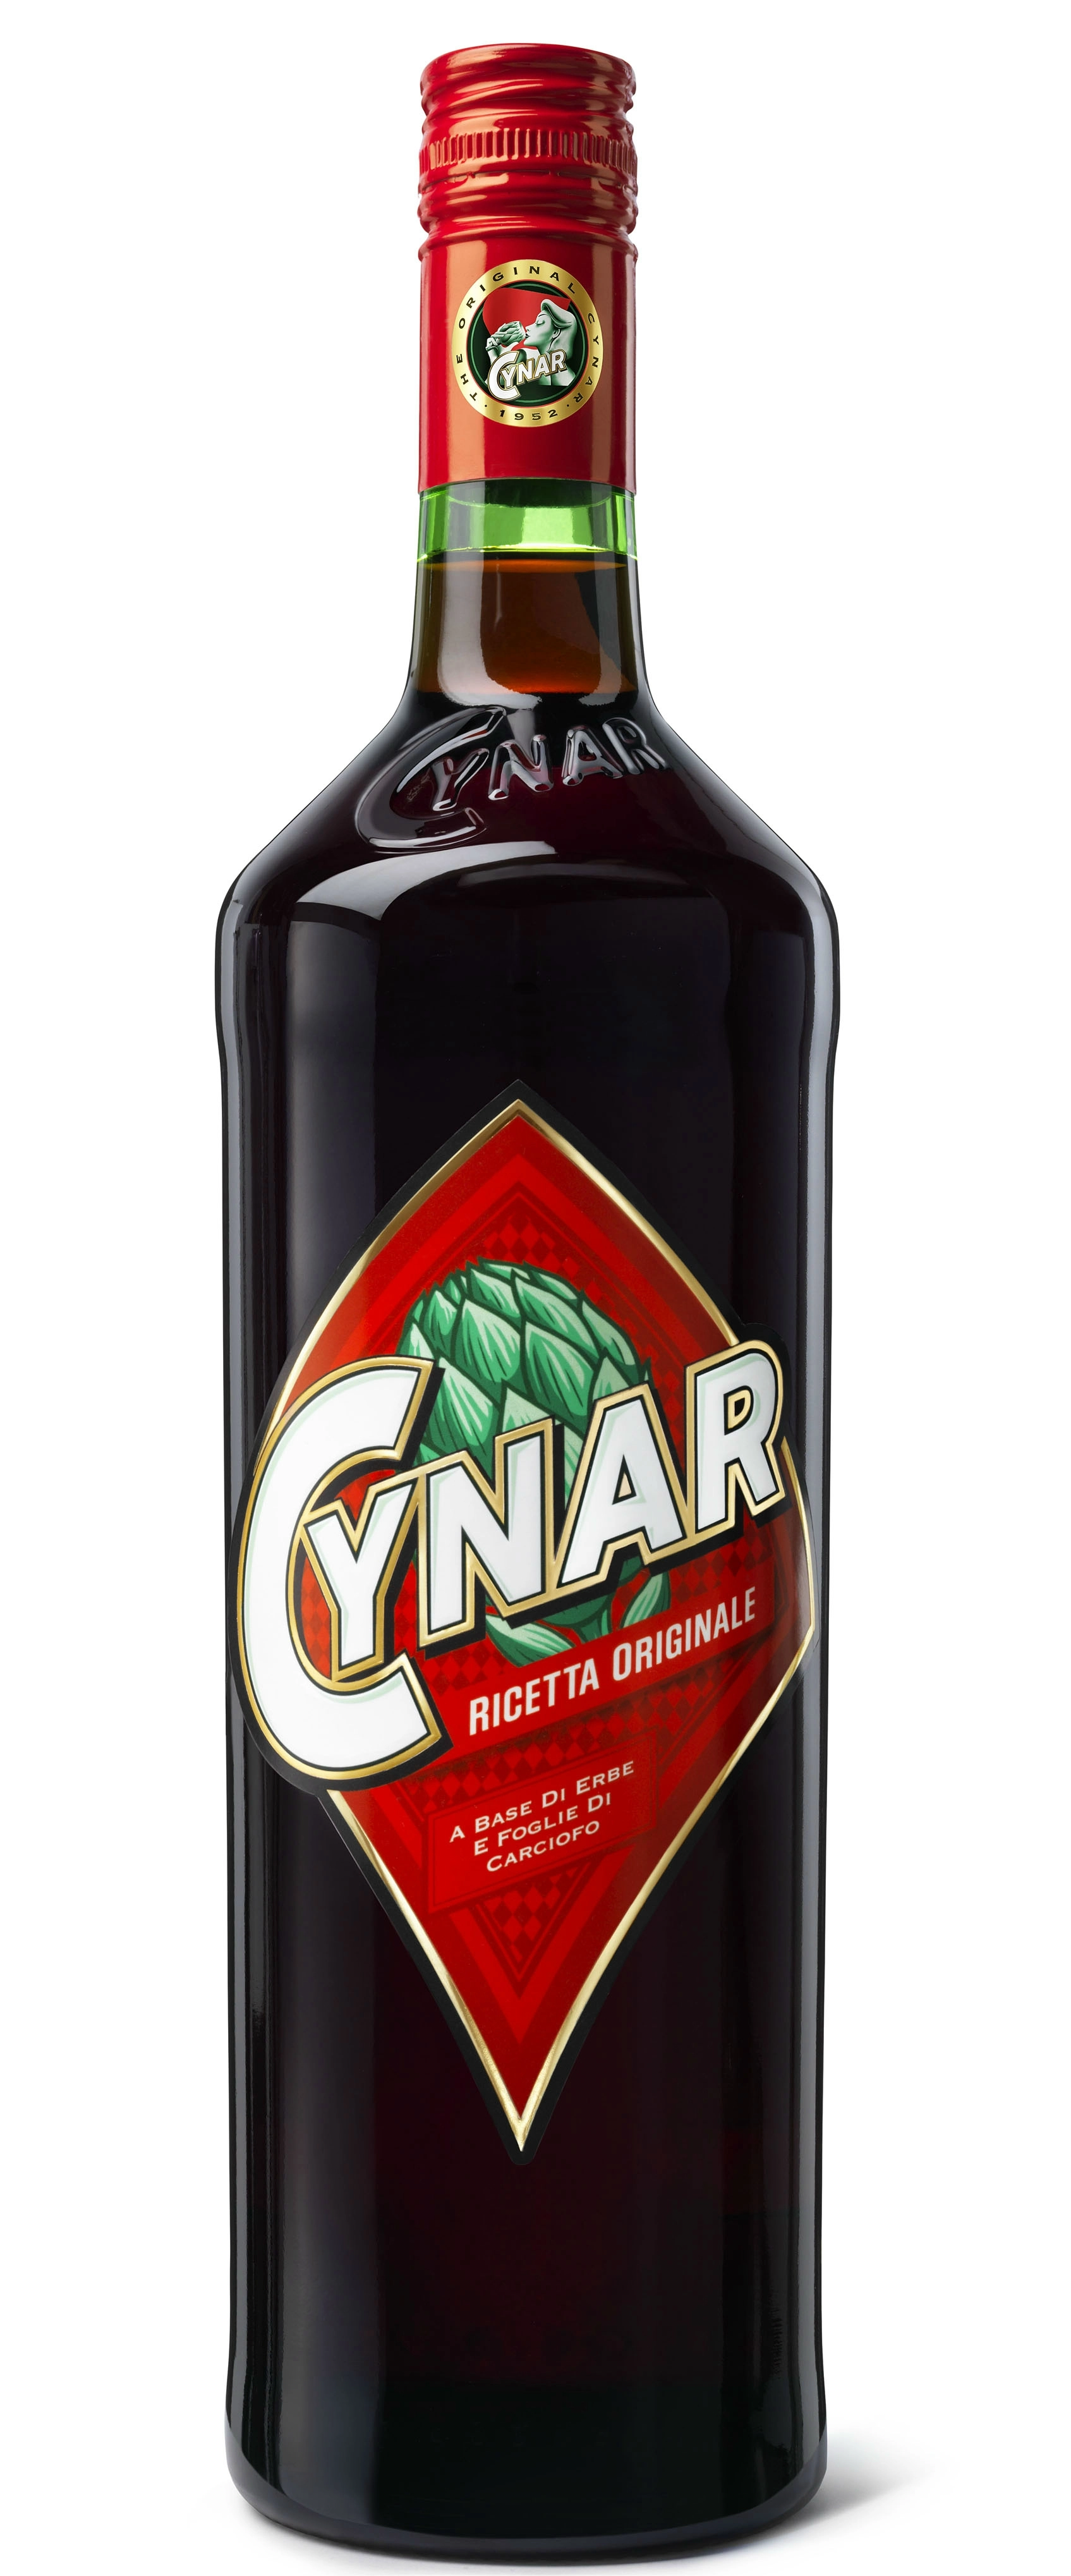 Cynar (0,7L / 16,5%)